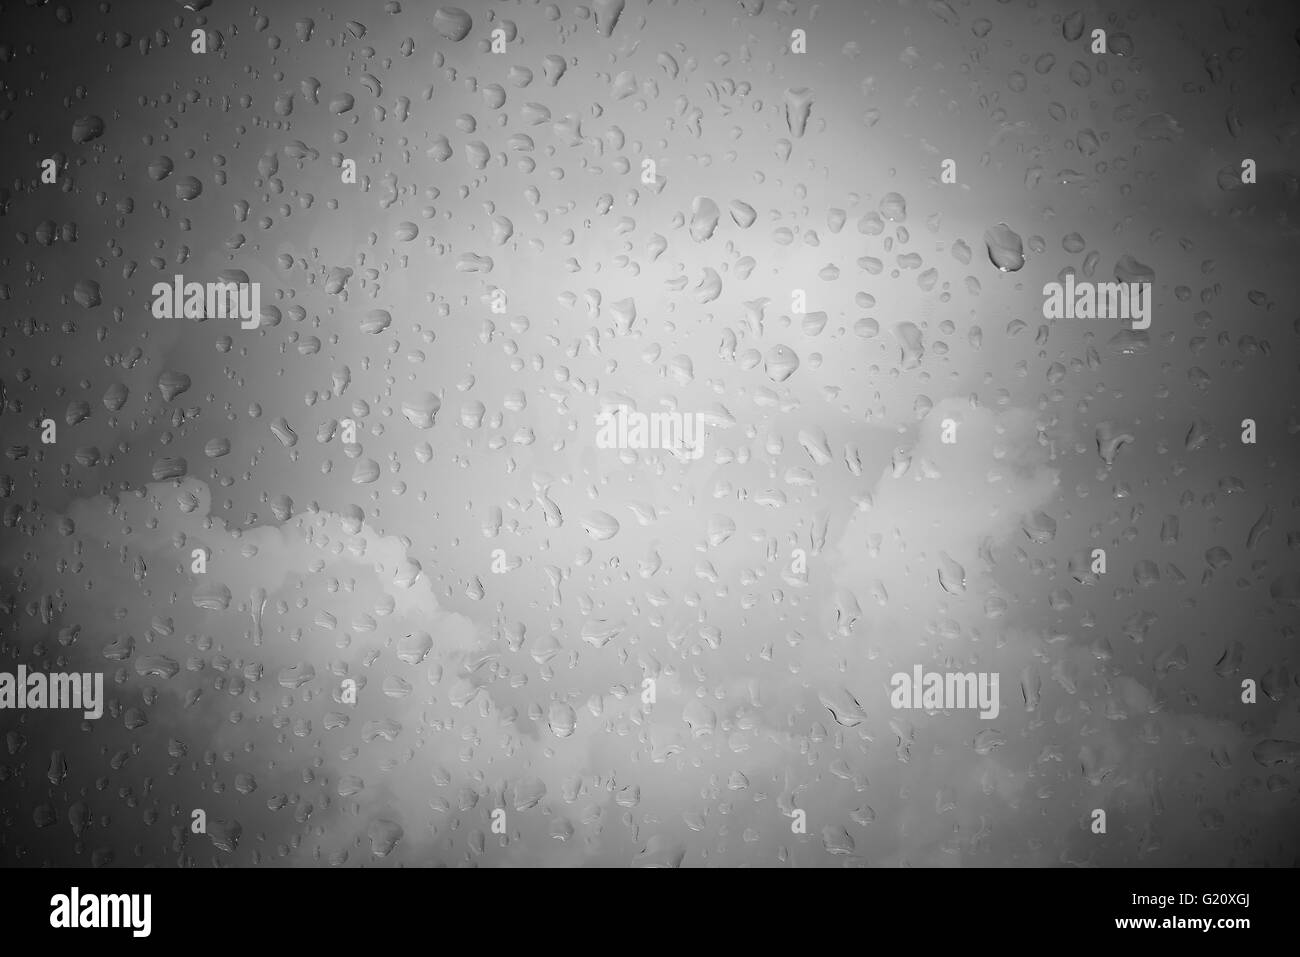 Regen-Tropfen mit bewölktem Himmel in schwarz / weiß, Konzept für Traurigkeit Stockfoto